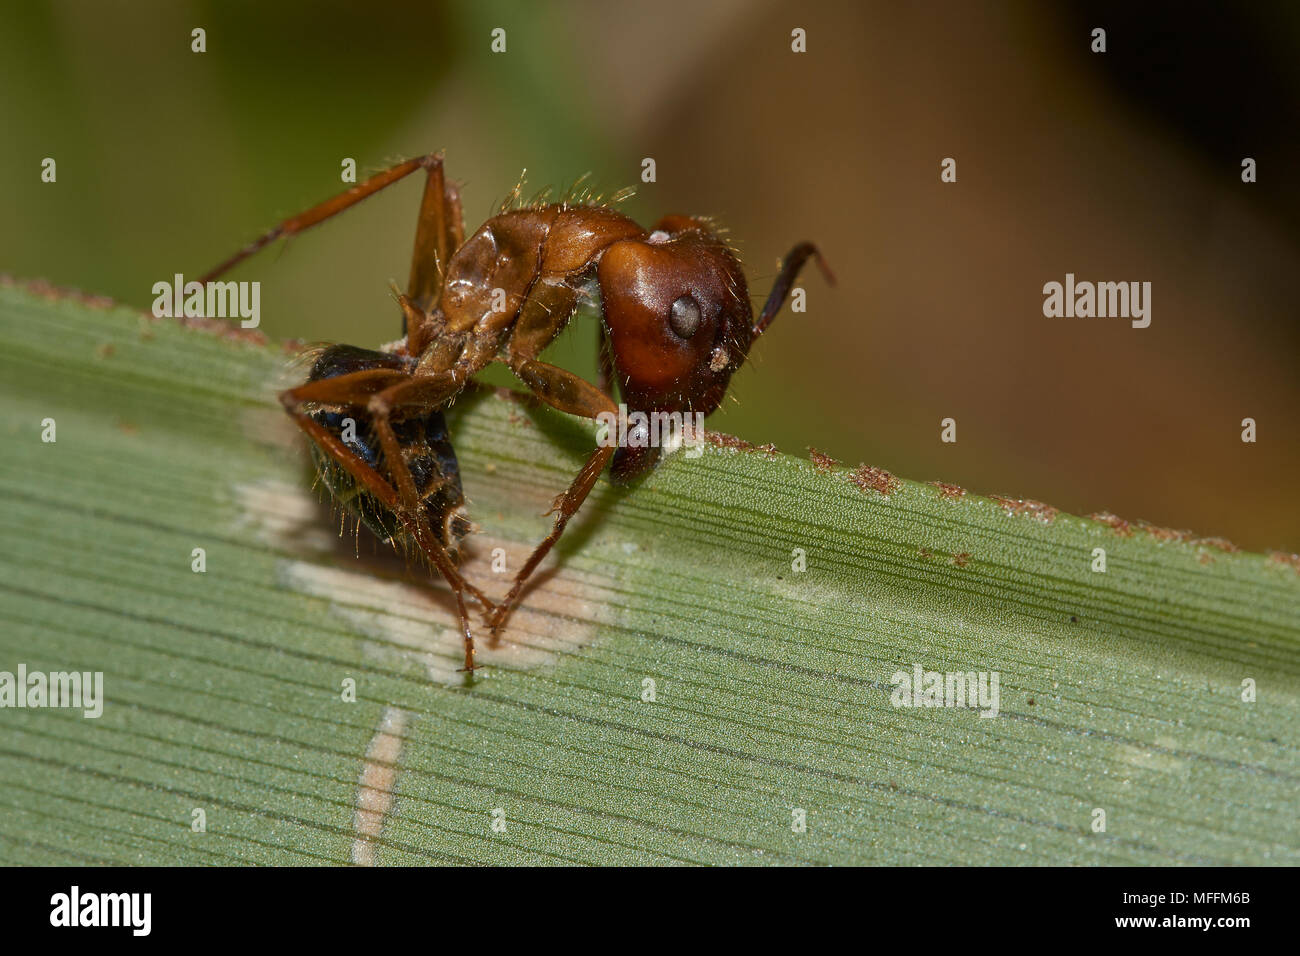 ANT durch Pilz infiziert der Pilz übernimmt das Gehirn des Ant und ändert das Verhalten der Ameise "Anweisung", um es zu Griff auf die Pflanze usw. Flori Stockfoto